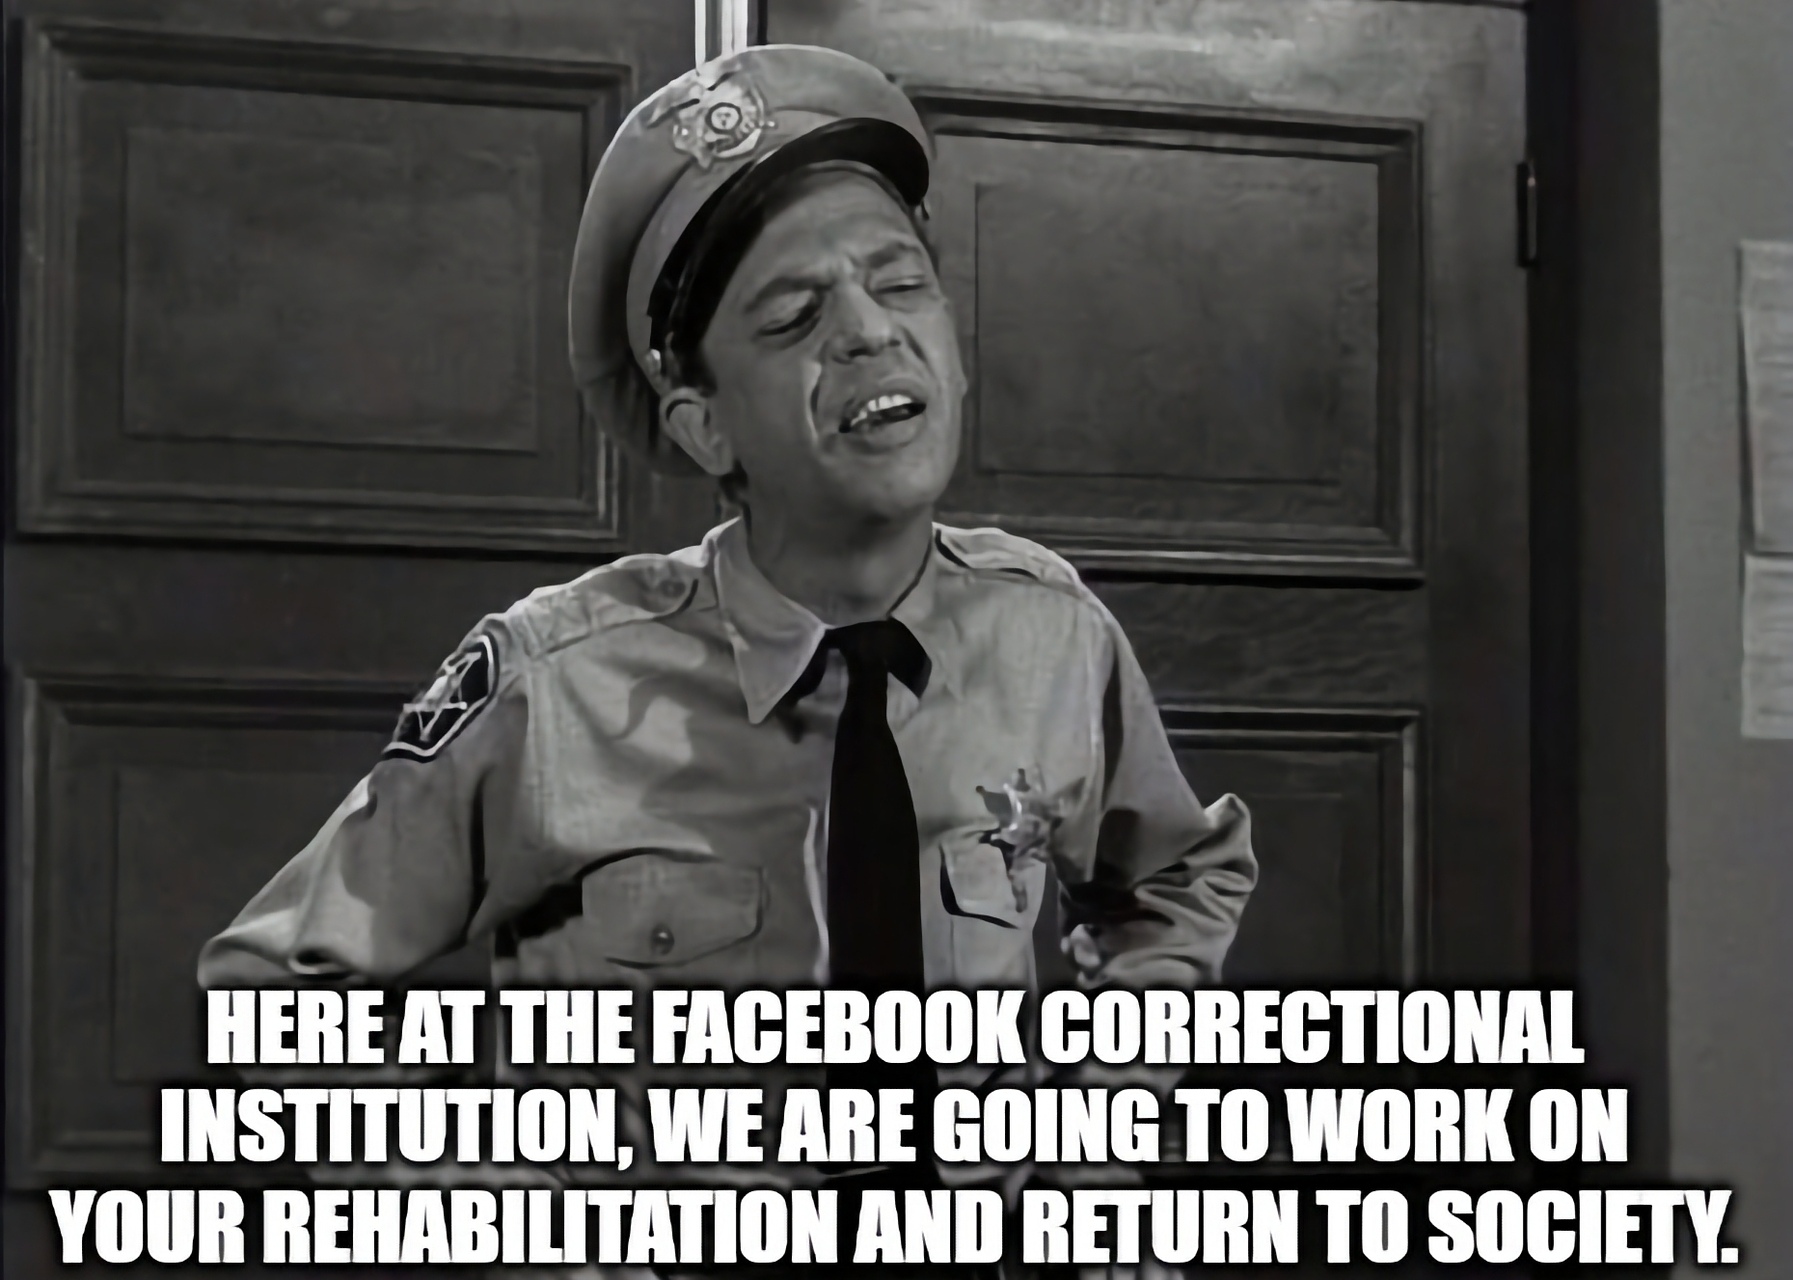 Facebook՝ «մեմ» (այսինքն՝ երգիծական մուլտֆիլմ համացանցում), որը ոգեշնչված է Facebook-ի չափավորության քաղաքականությունից, որը խիստ կասկածելի է (Պատկեր՝ imgflip.com)